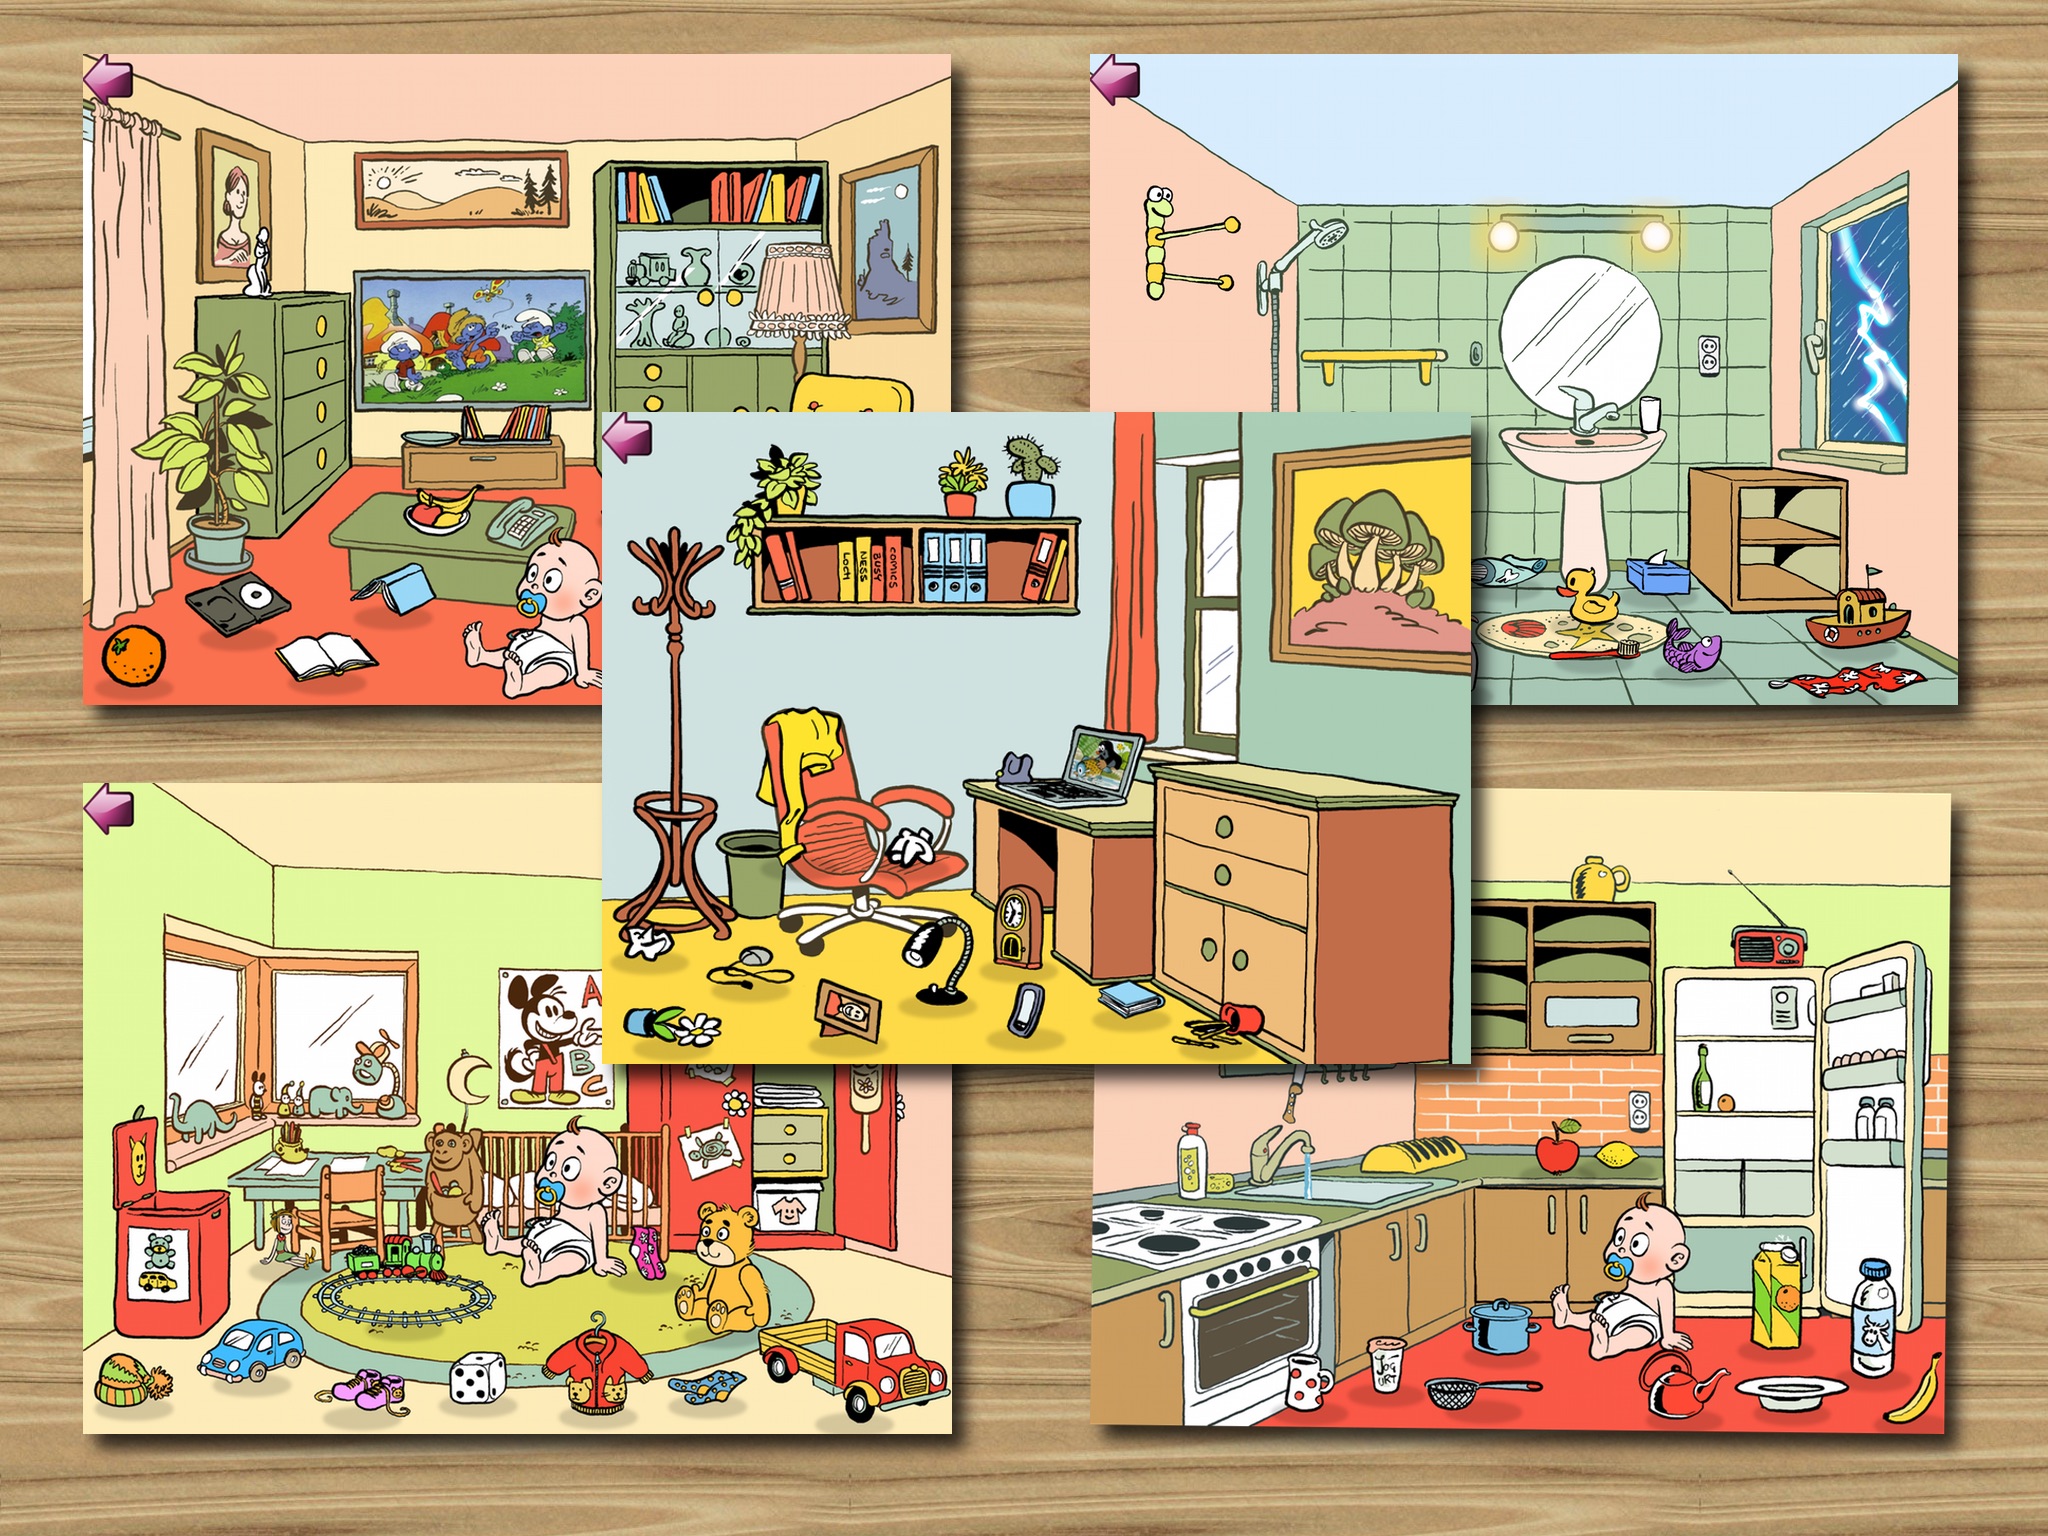 Pedro limpia la casa - un juego para niño pequeňos - español screenshot 2